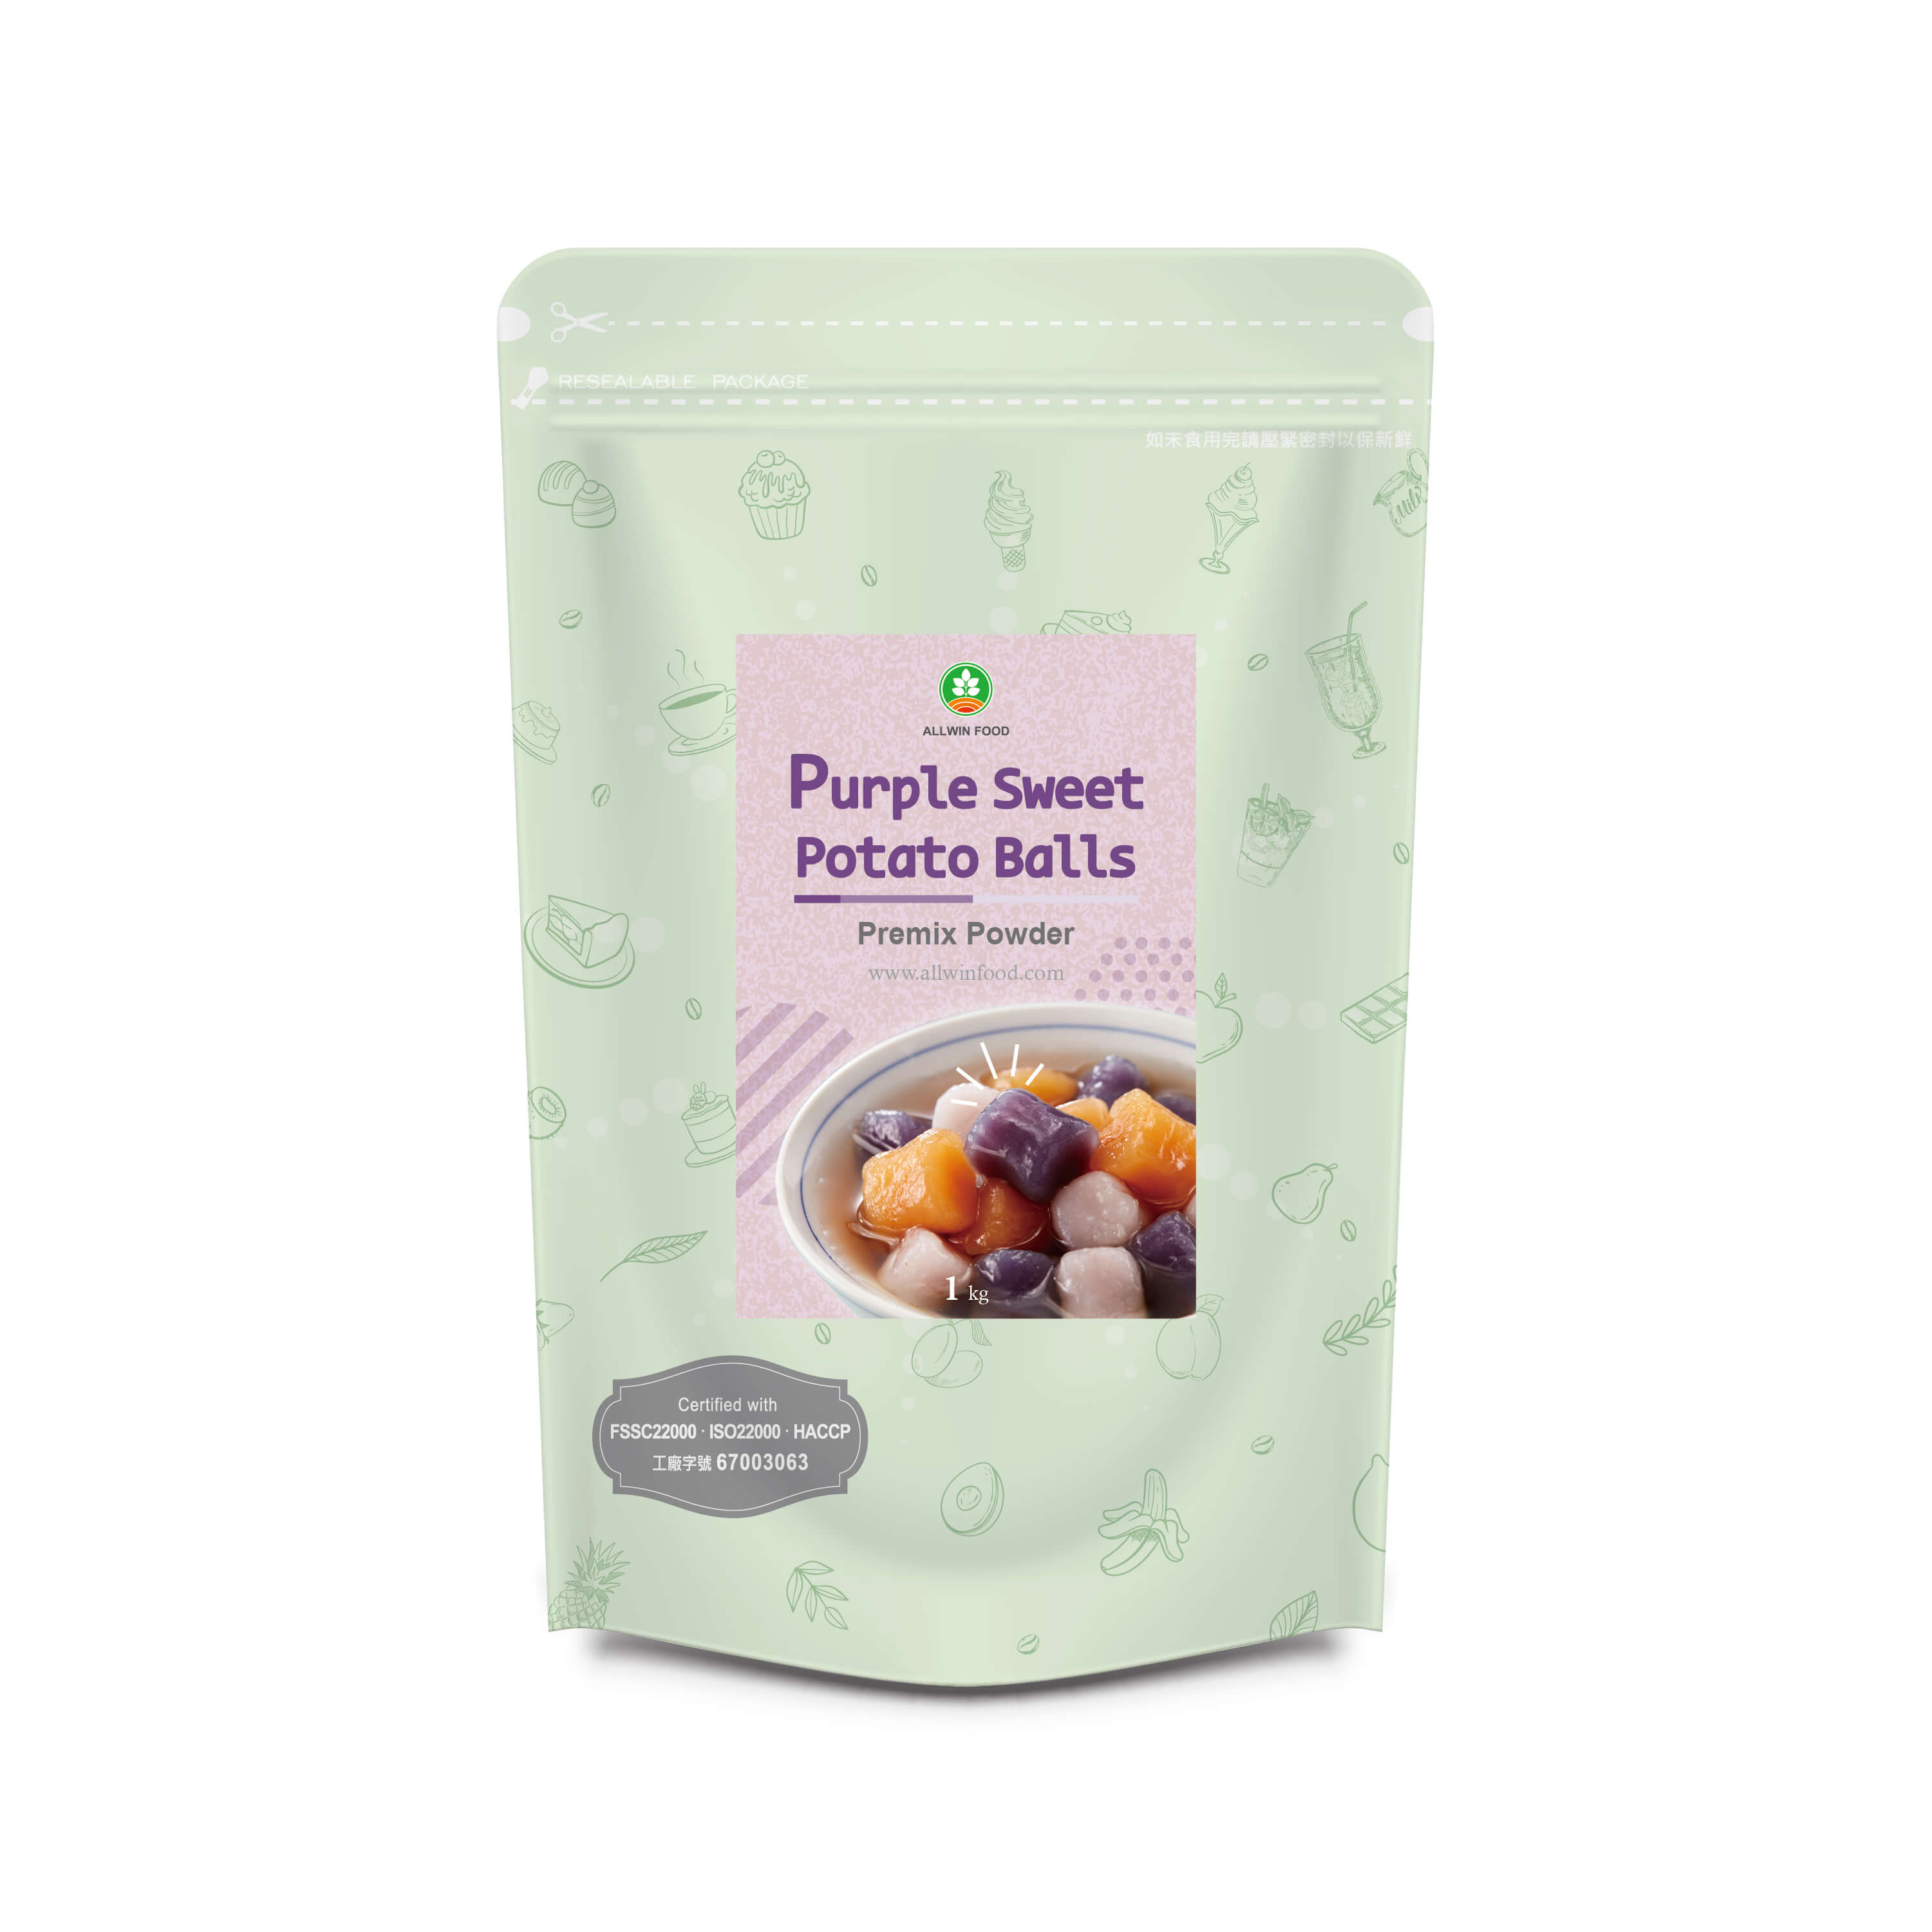 Purple Sweet Potato Balls Premix Powder